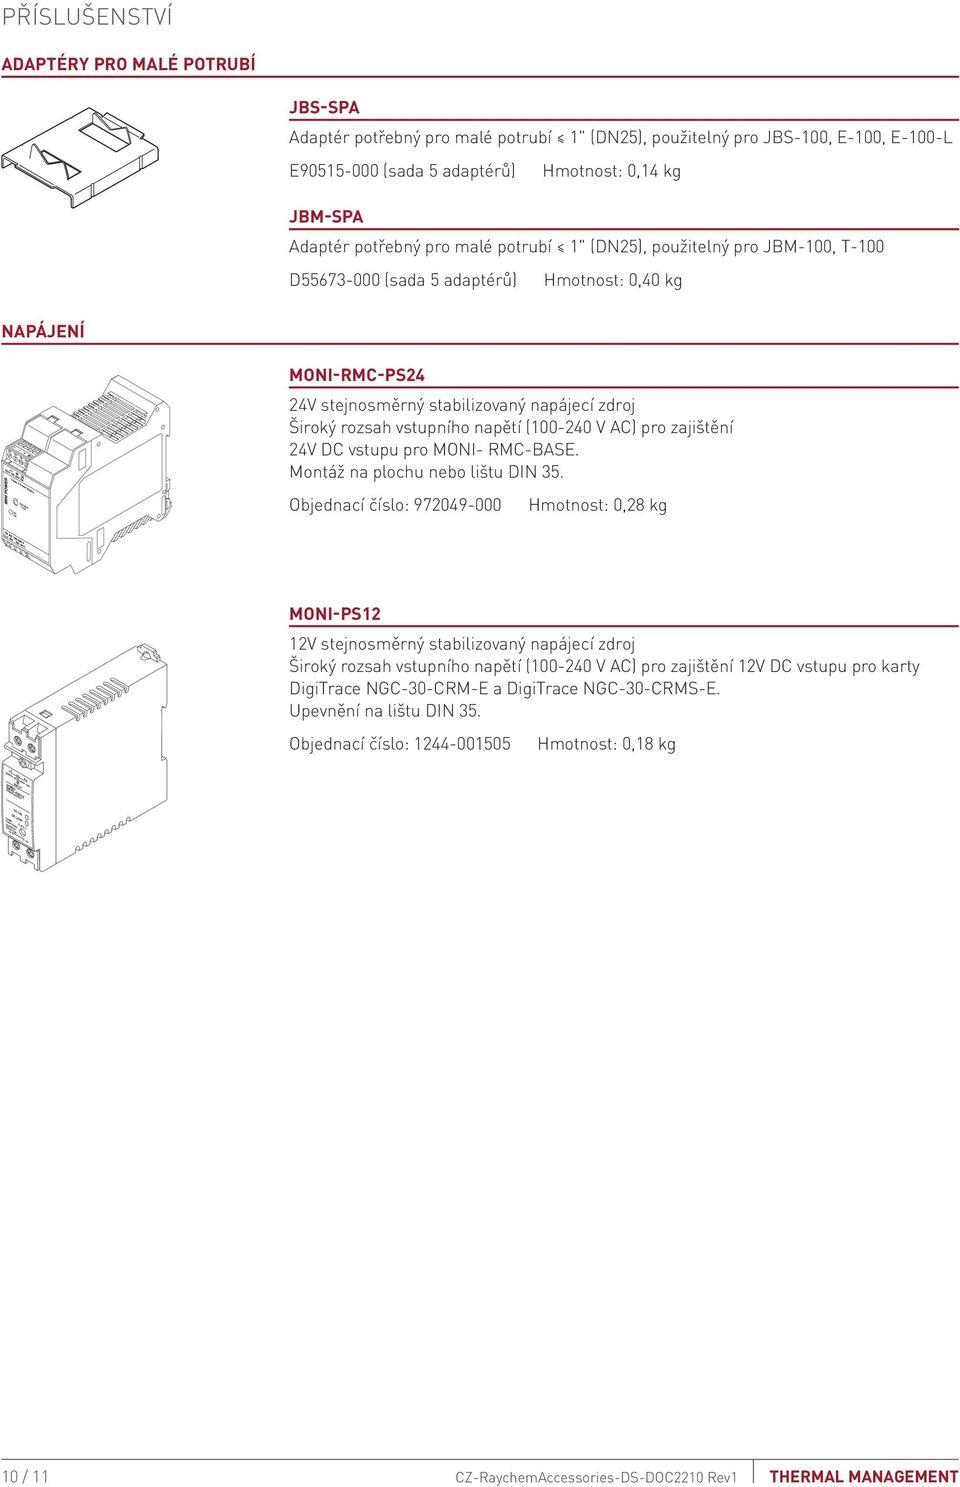 (100-240 V AC) pro zajištění 24V DC vstupu pro MONI- RMC-BASE. Montáž na plochu nebo lištu DIN 35.